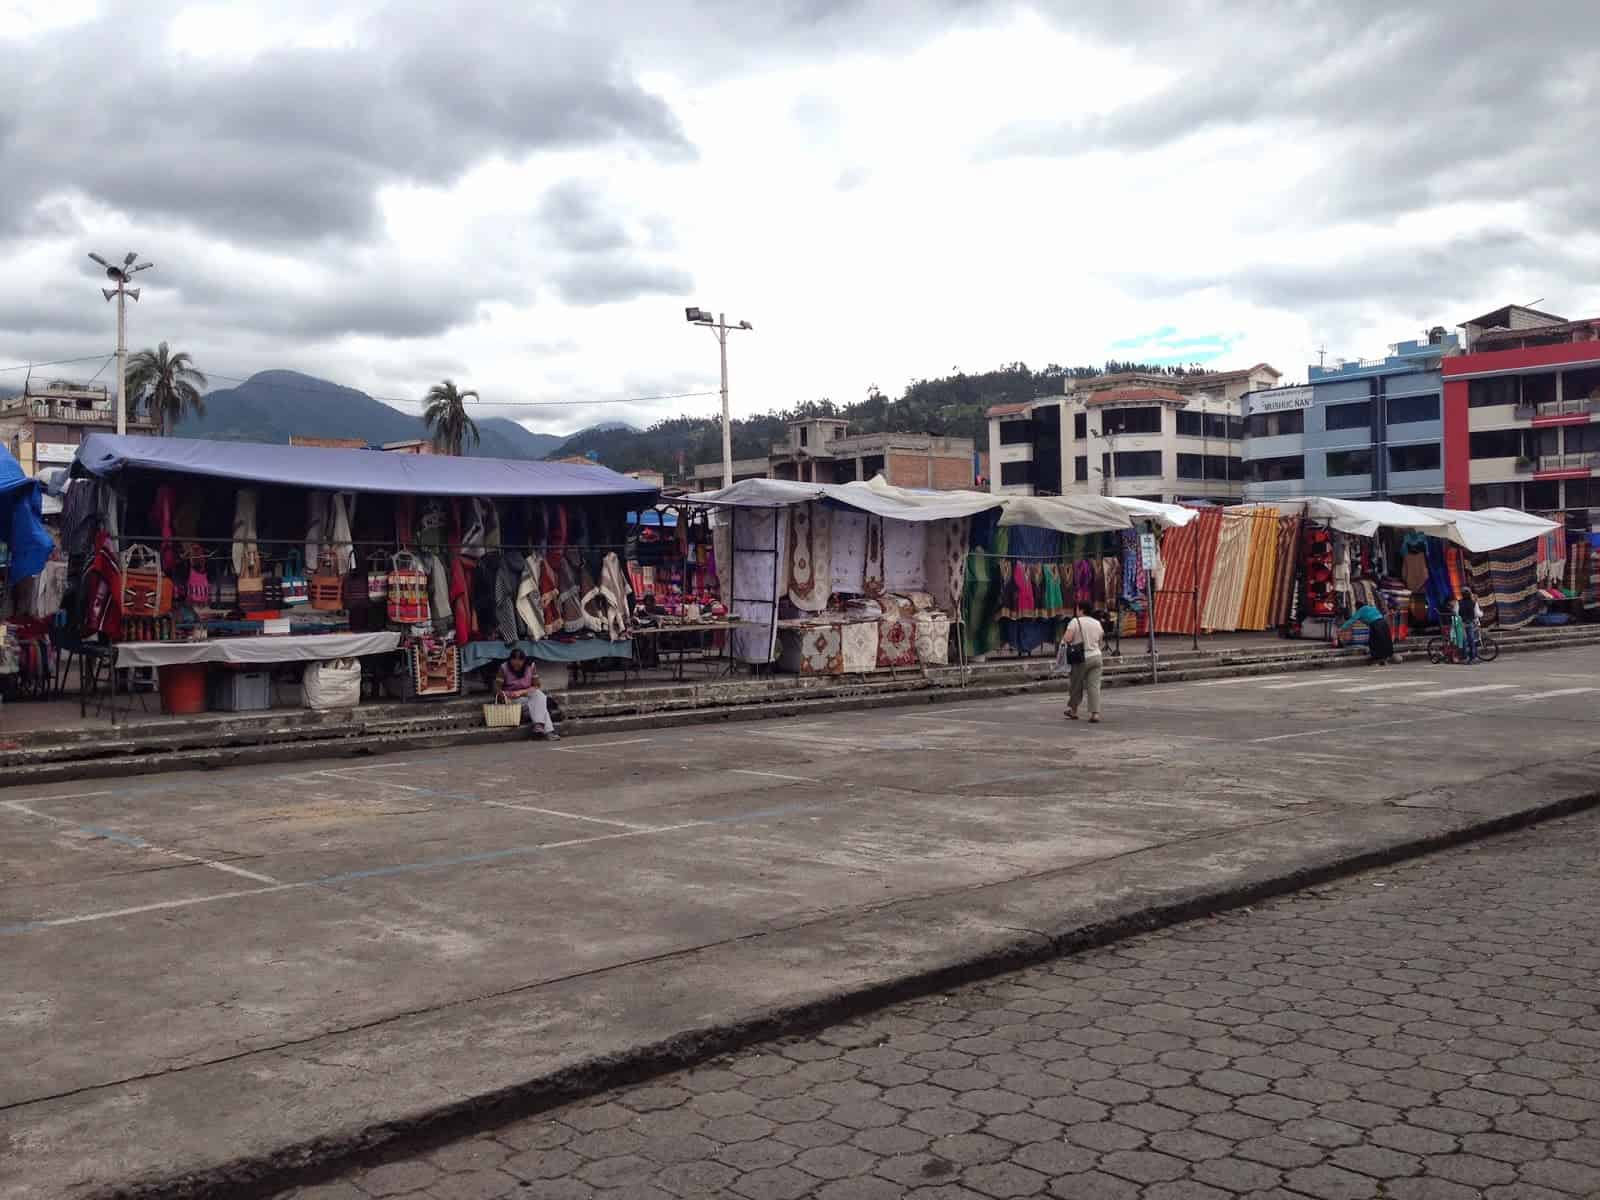 Morning at Plaza de los Ponchos in Otavalo, Ecuador